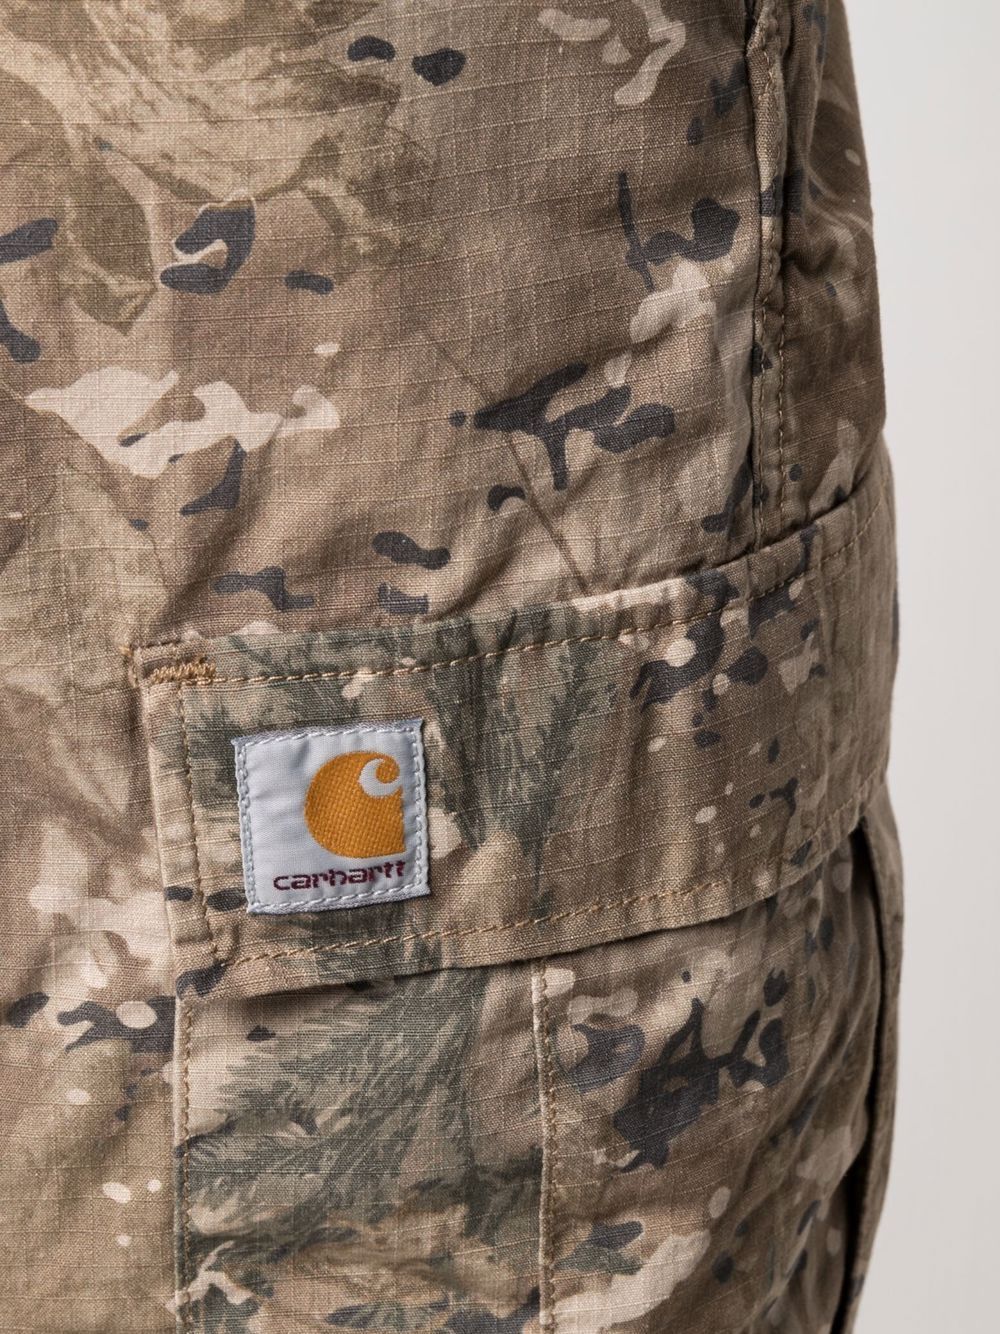 фото Carhartt wip шорты с камуфляжным принтом